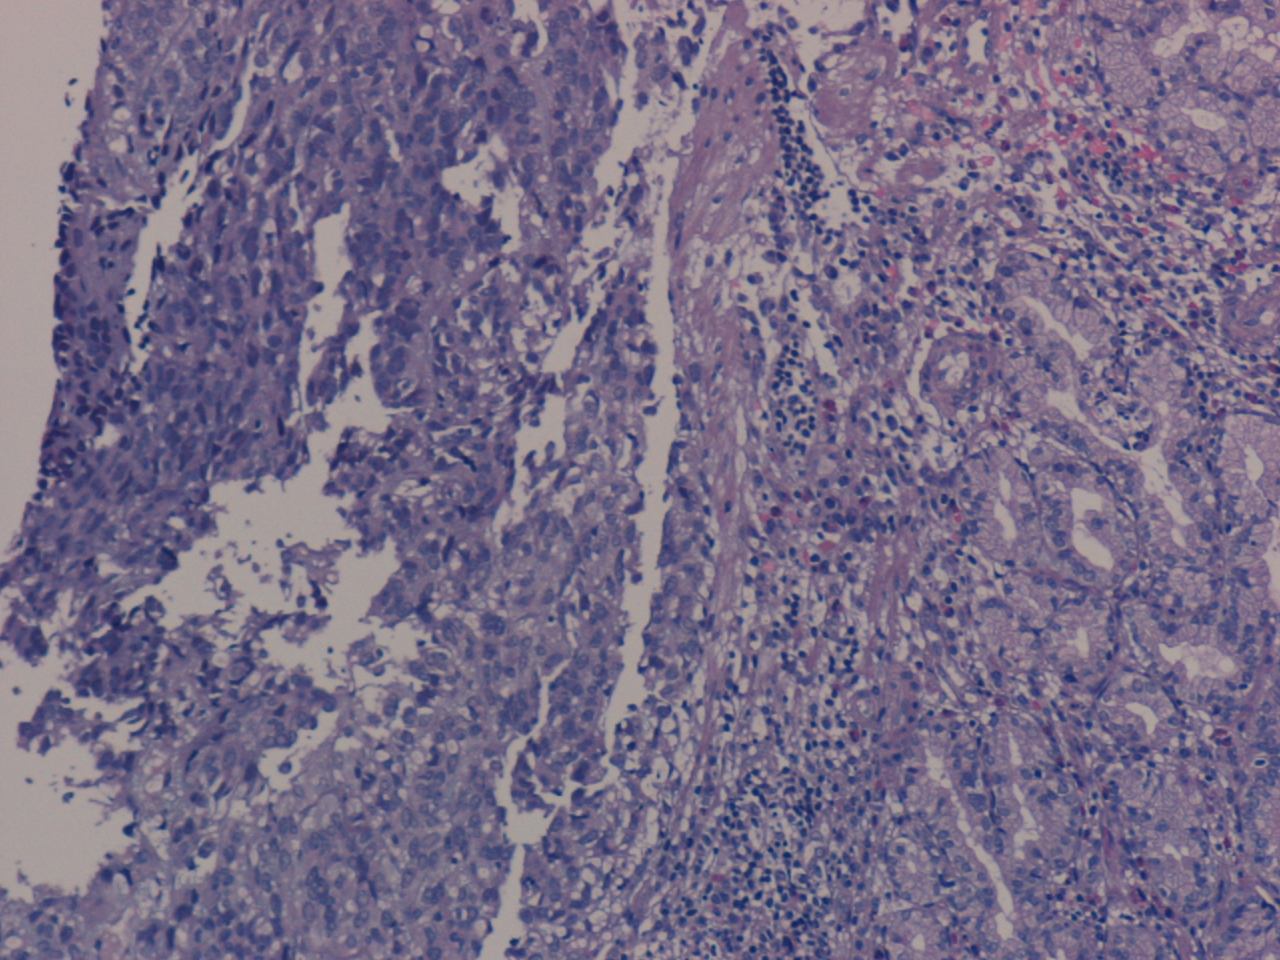 Imagen de Tumor submucoso gstrico / Gastric submucosal tumor.